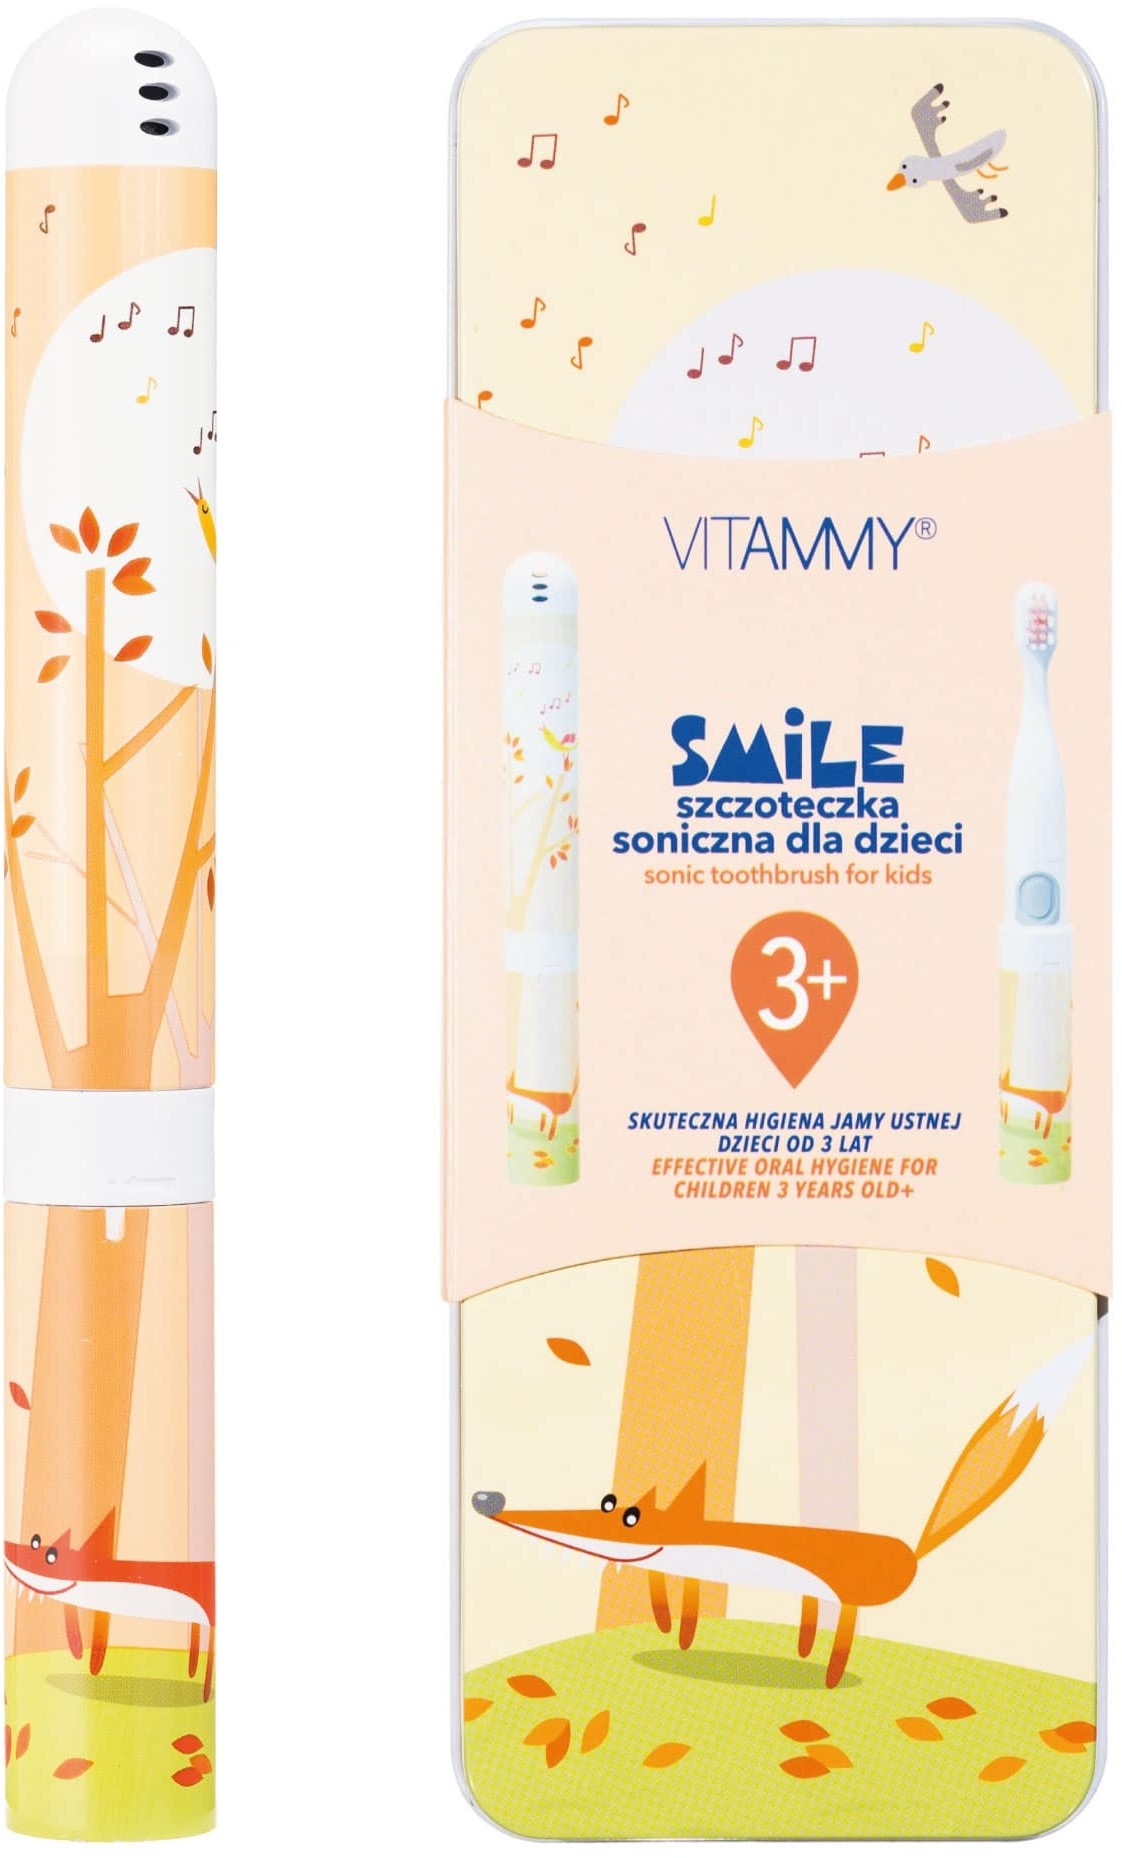 VITAMMY VITAMMY Smile lisek Szczoteczka soniczna dla dzieci z zębami mlecznymi 3 +